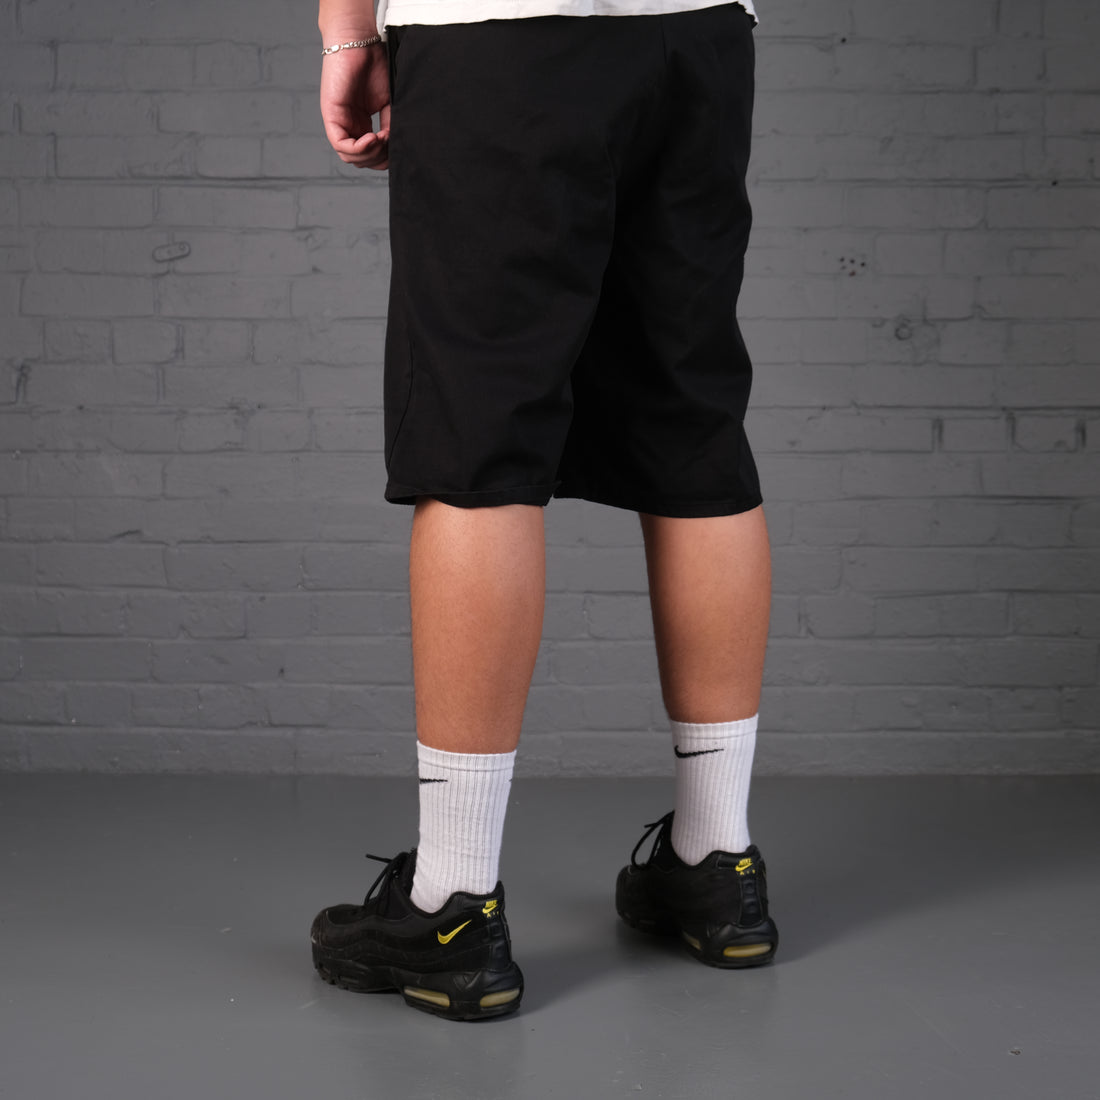 Vintage Dickies 874 Shorts in Black